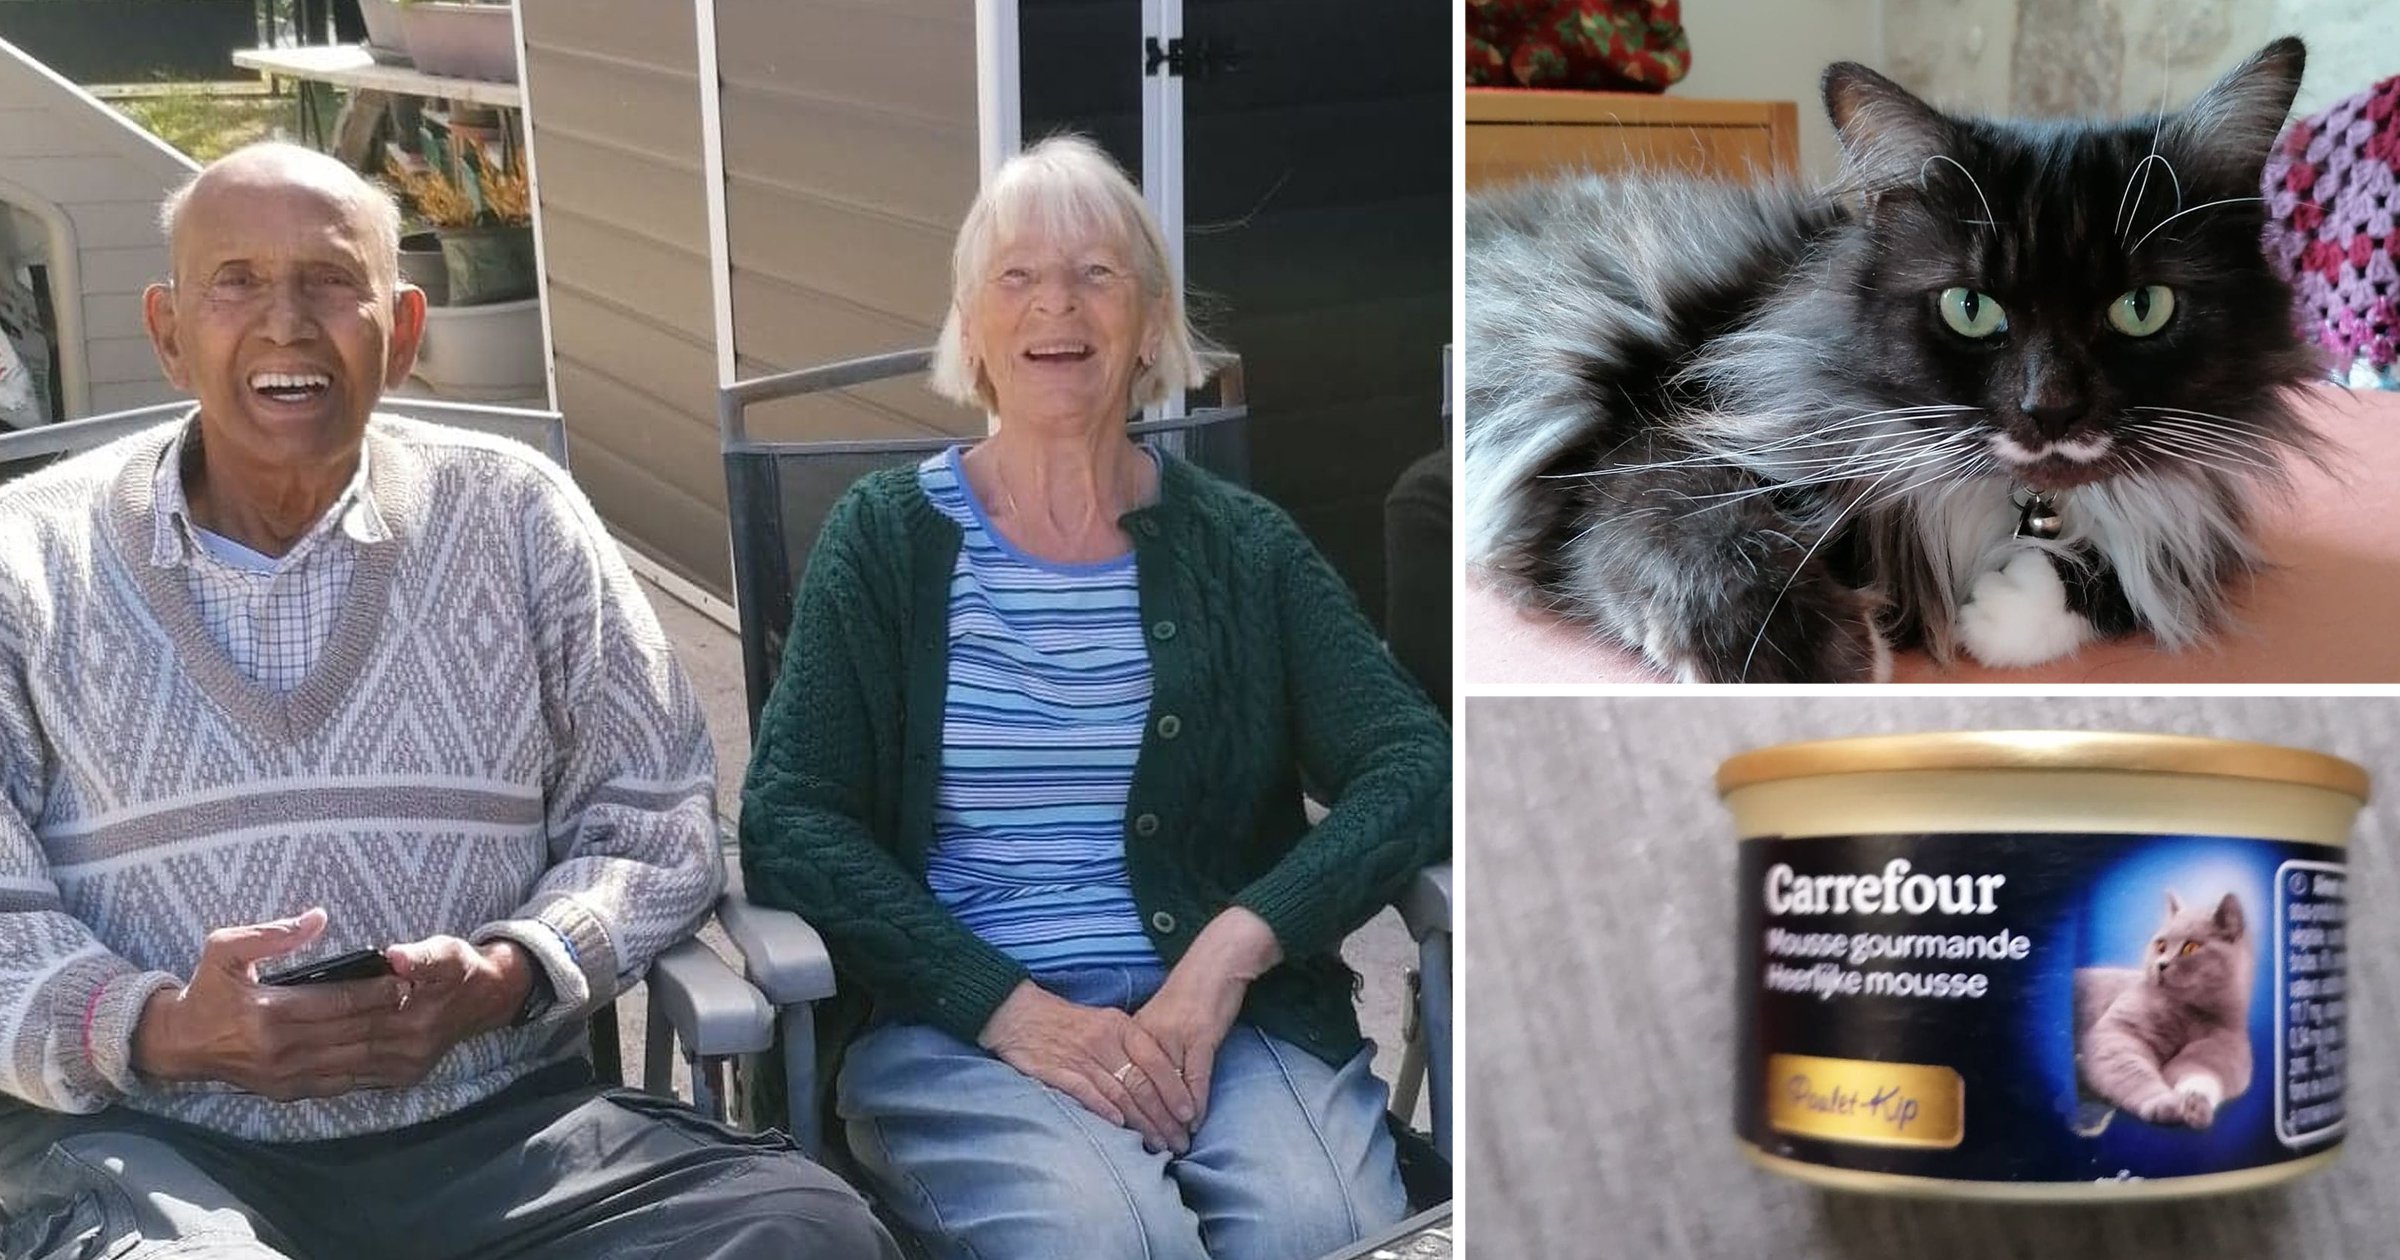  Doi pensionari au descoperit, după ani de zile, că pateul lor preferat era de fapt mâncare de pisici